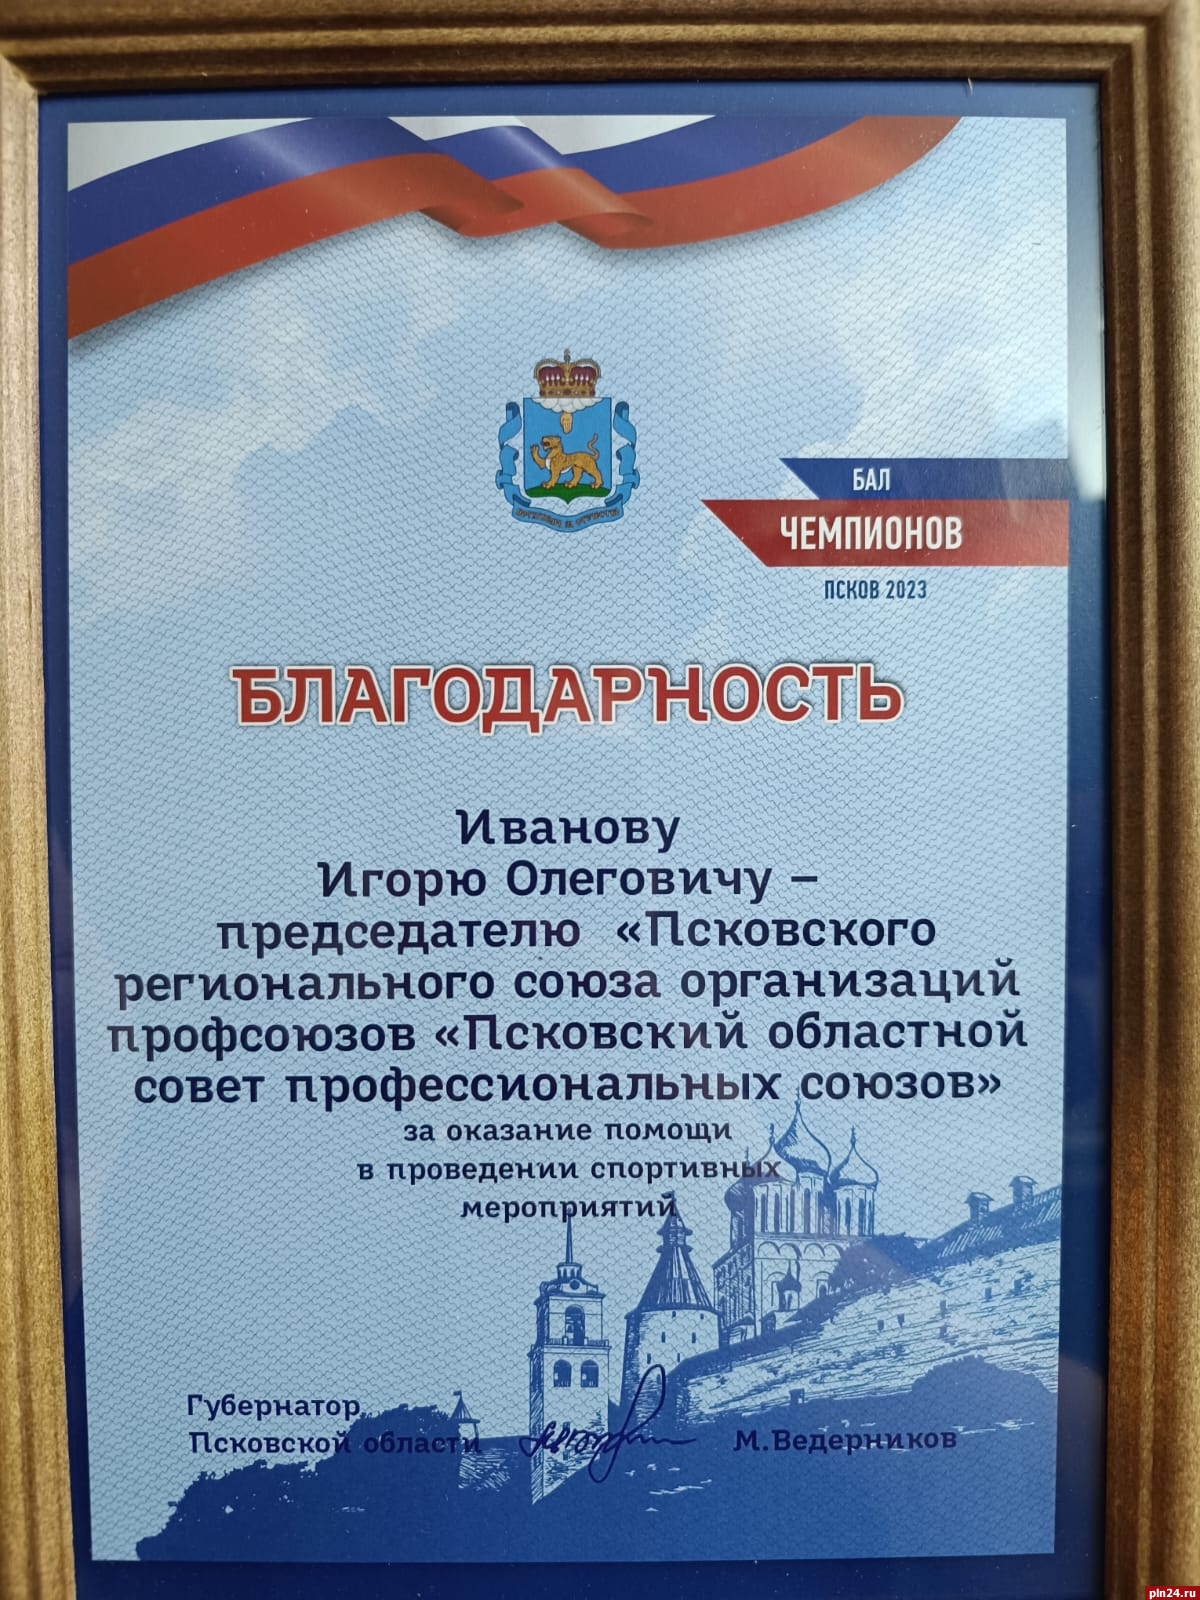 Главу Псковского облсовпрофа наградили за помощь в проведении спортивных мероприятий